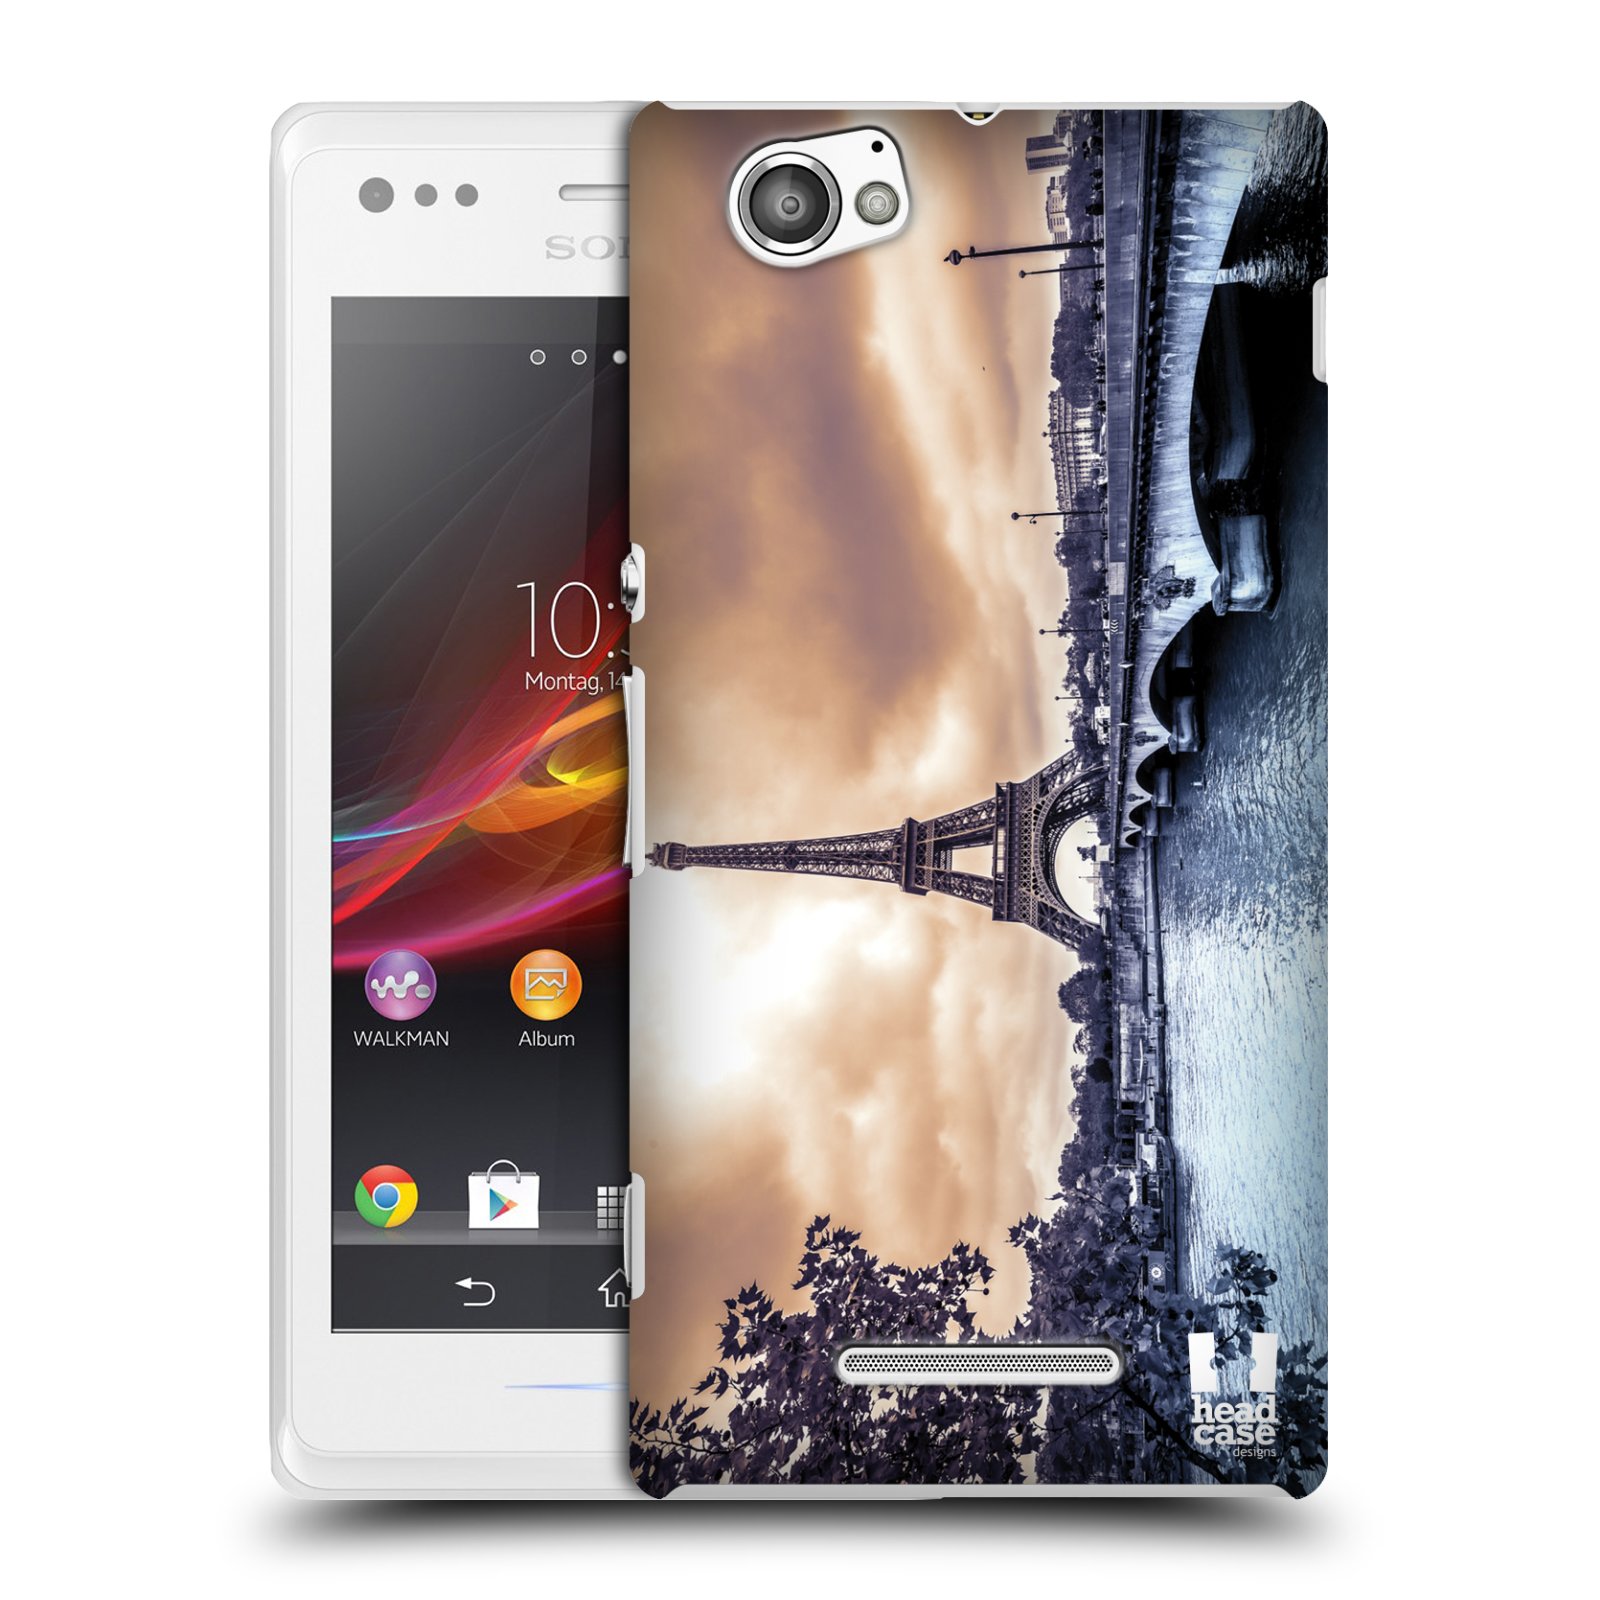 HEAD CASE plastový obal na mobil Sony Xperia M vzor Panoramata měst horizontální foto DEŠTIVÝ DEN V PAŘÍŽI, FRANCIE